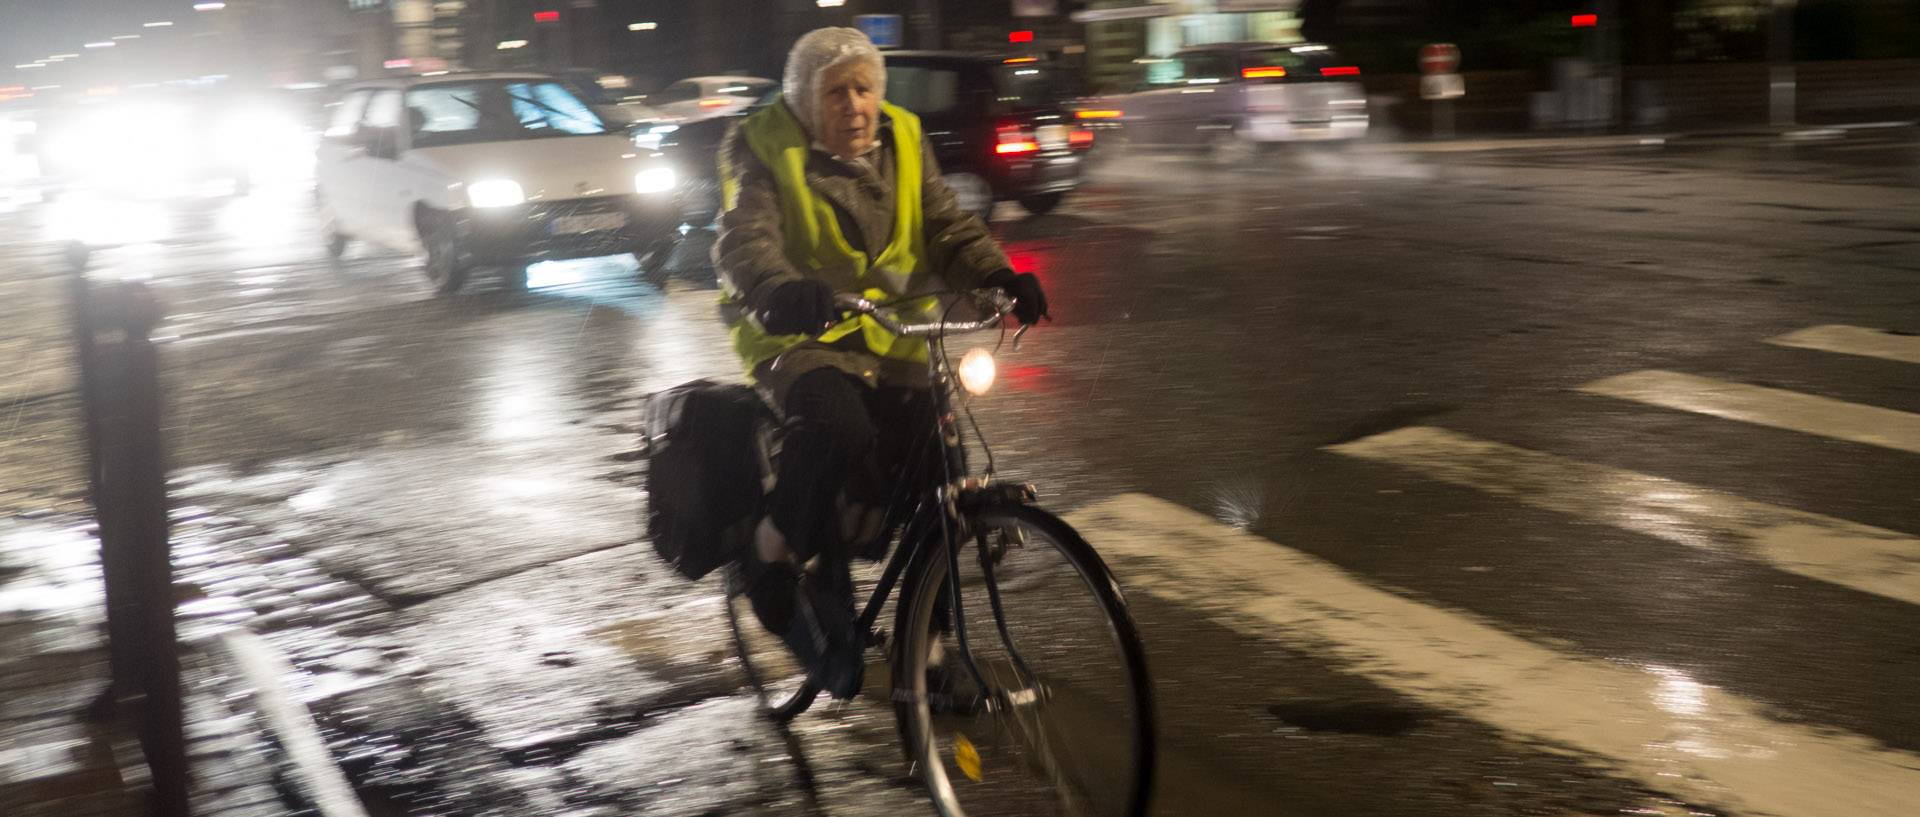 Vieille dame sur un vélo, sous la pluie, boulevard Vauban, à Lille.